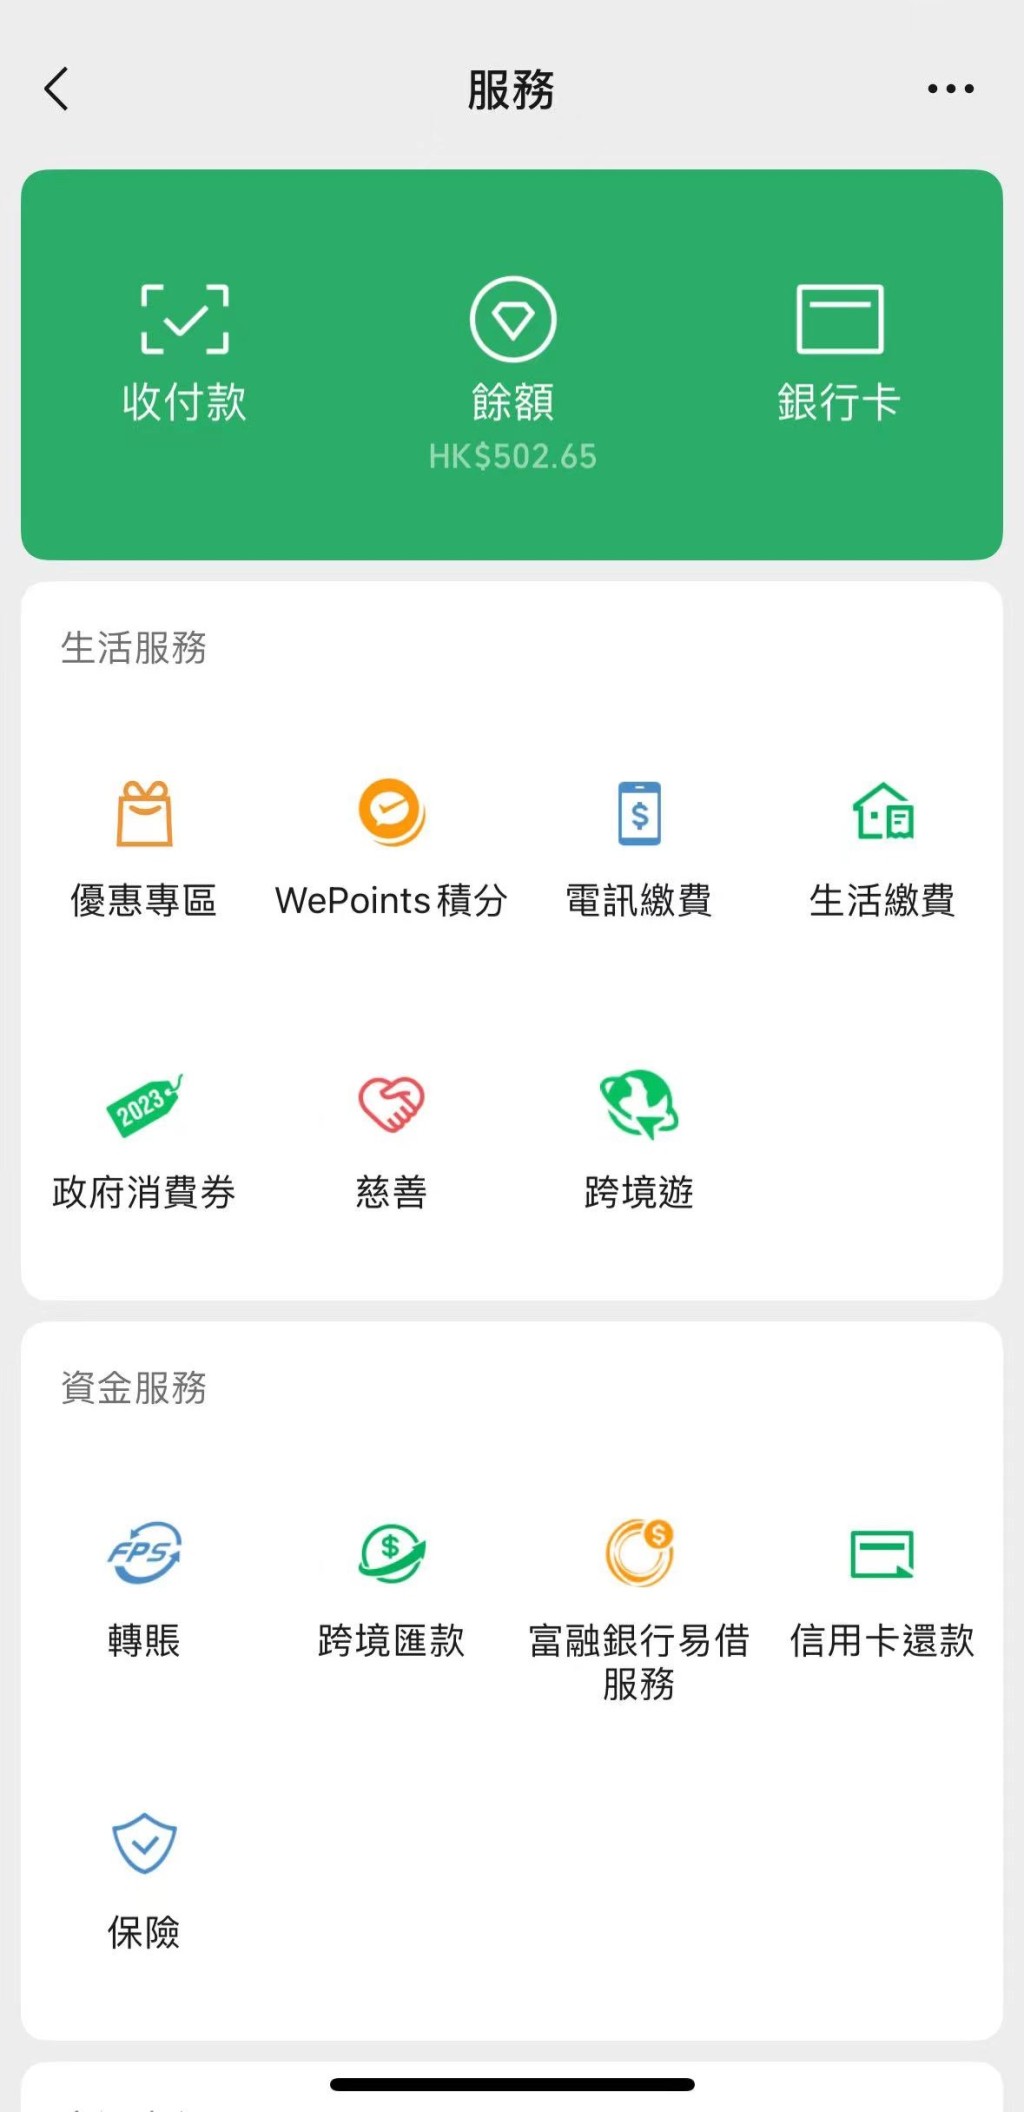 如餘額顯示「HK$」，代表用戶正在使用港幣錢包（即WeChat Pay HK）